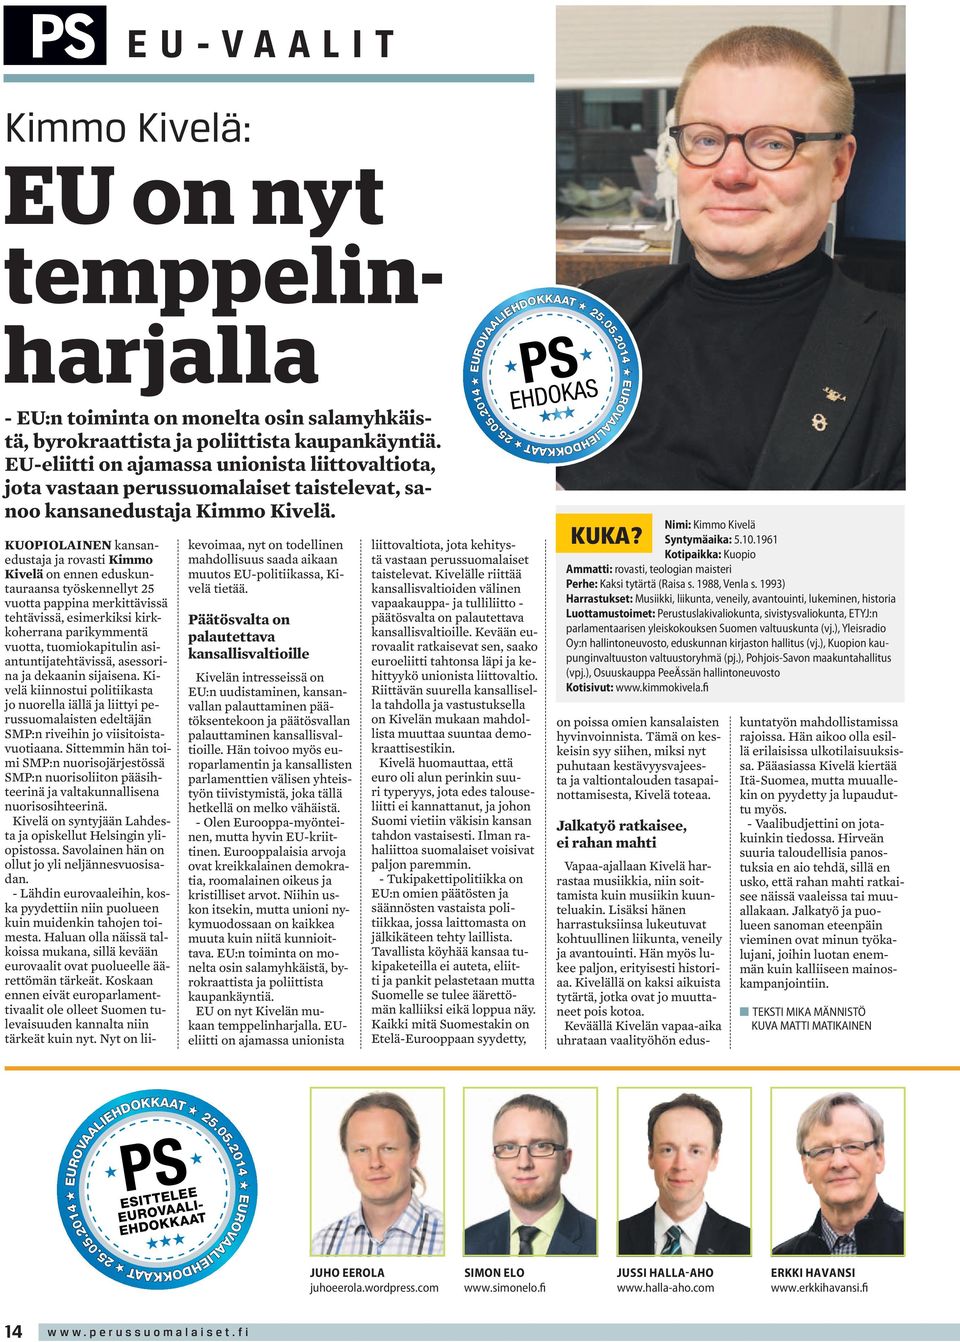 Kuopiolainen kansanedustaja ja rovasti Kimmo Kivelä on ennen eduskuntauraansa työskennellyt 25 vuotta pappina merkittävissä tehtävissä, esimerkiksi kirkkoherrana parikymmentä vuotta, tuomiokapitulin